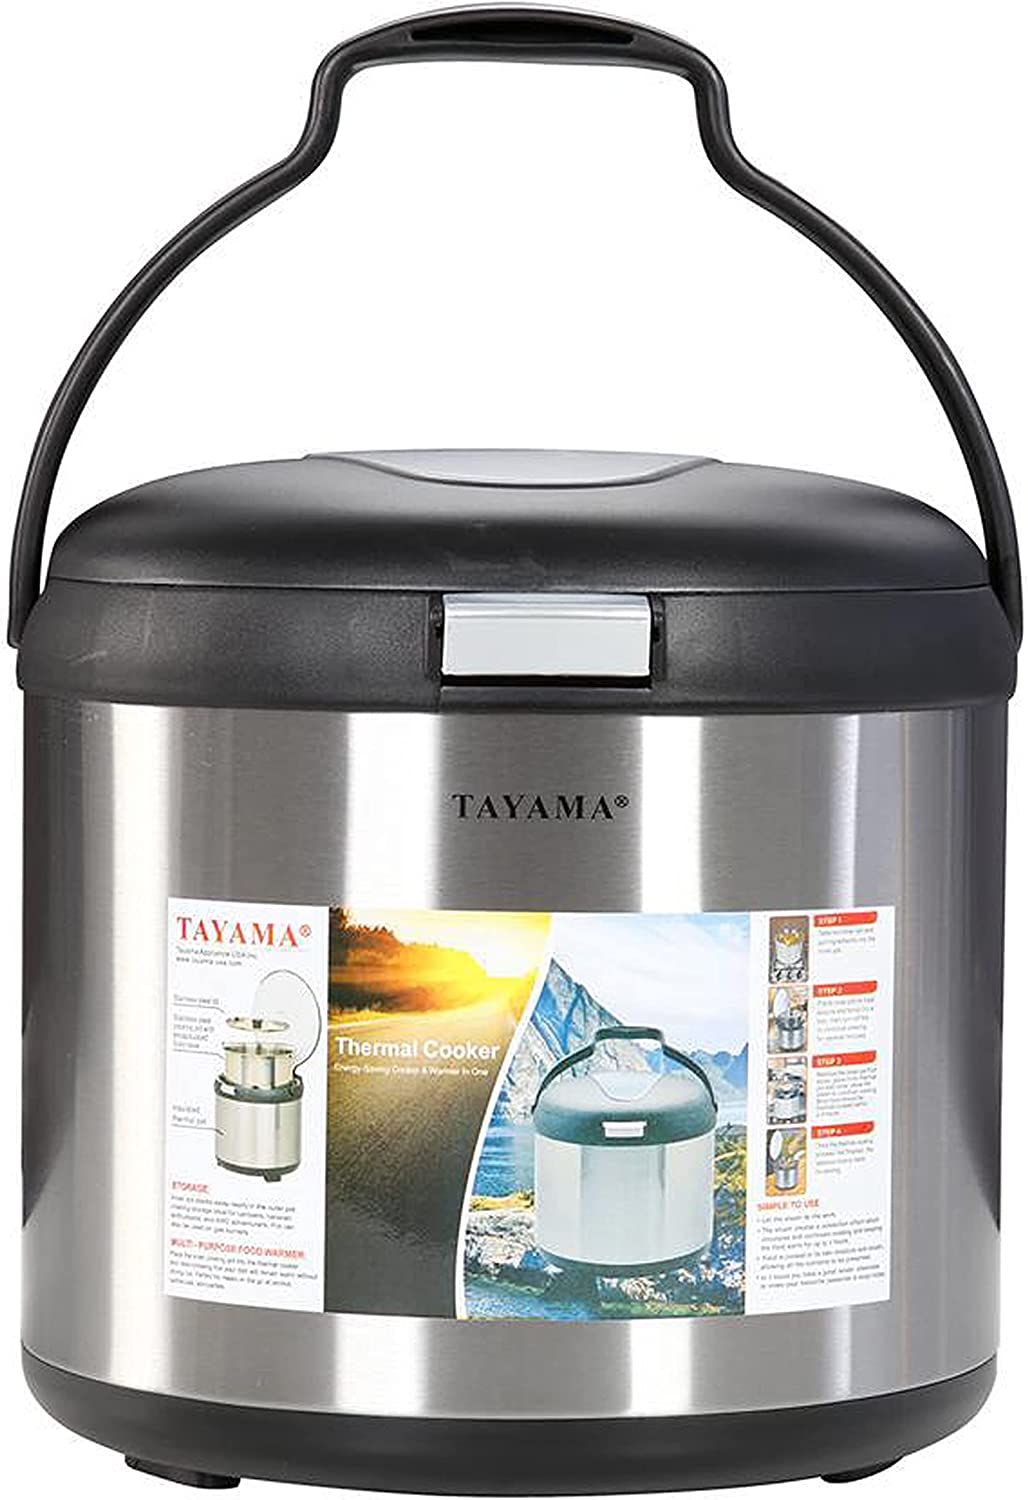 Tayama 7-Quart Thermal Cooker